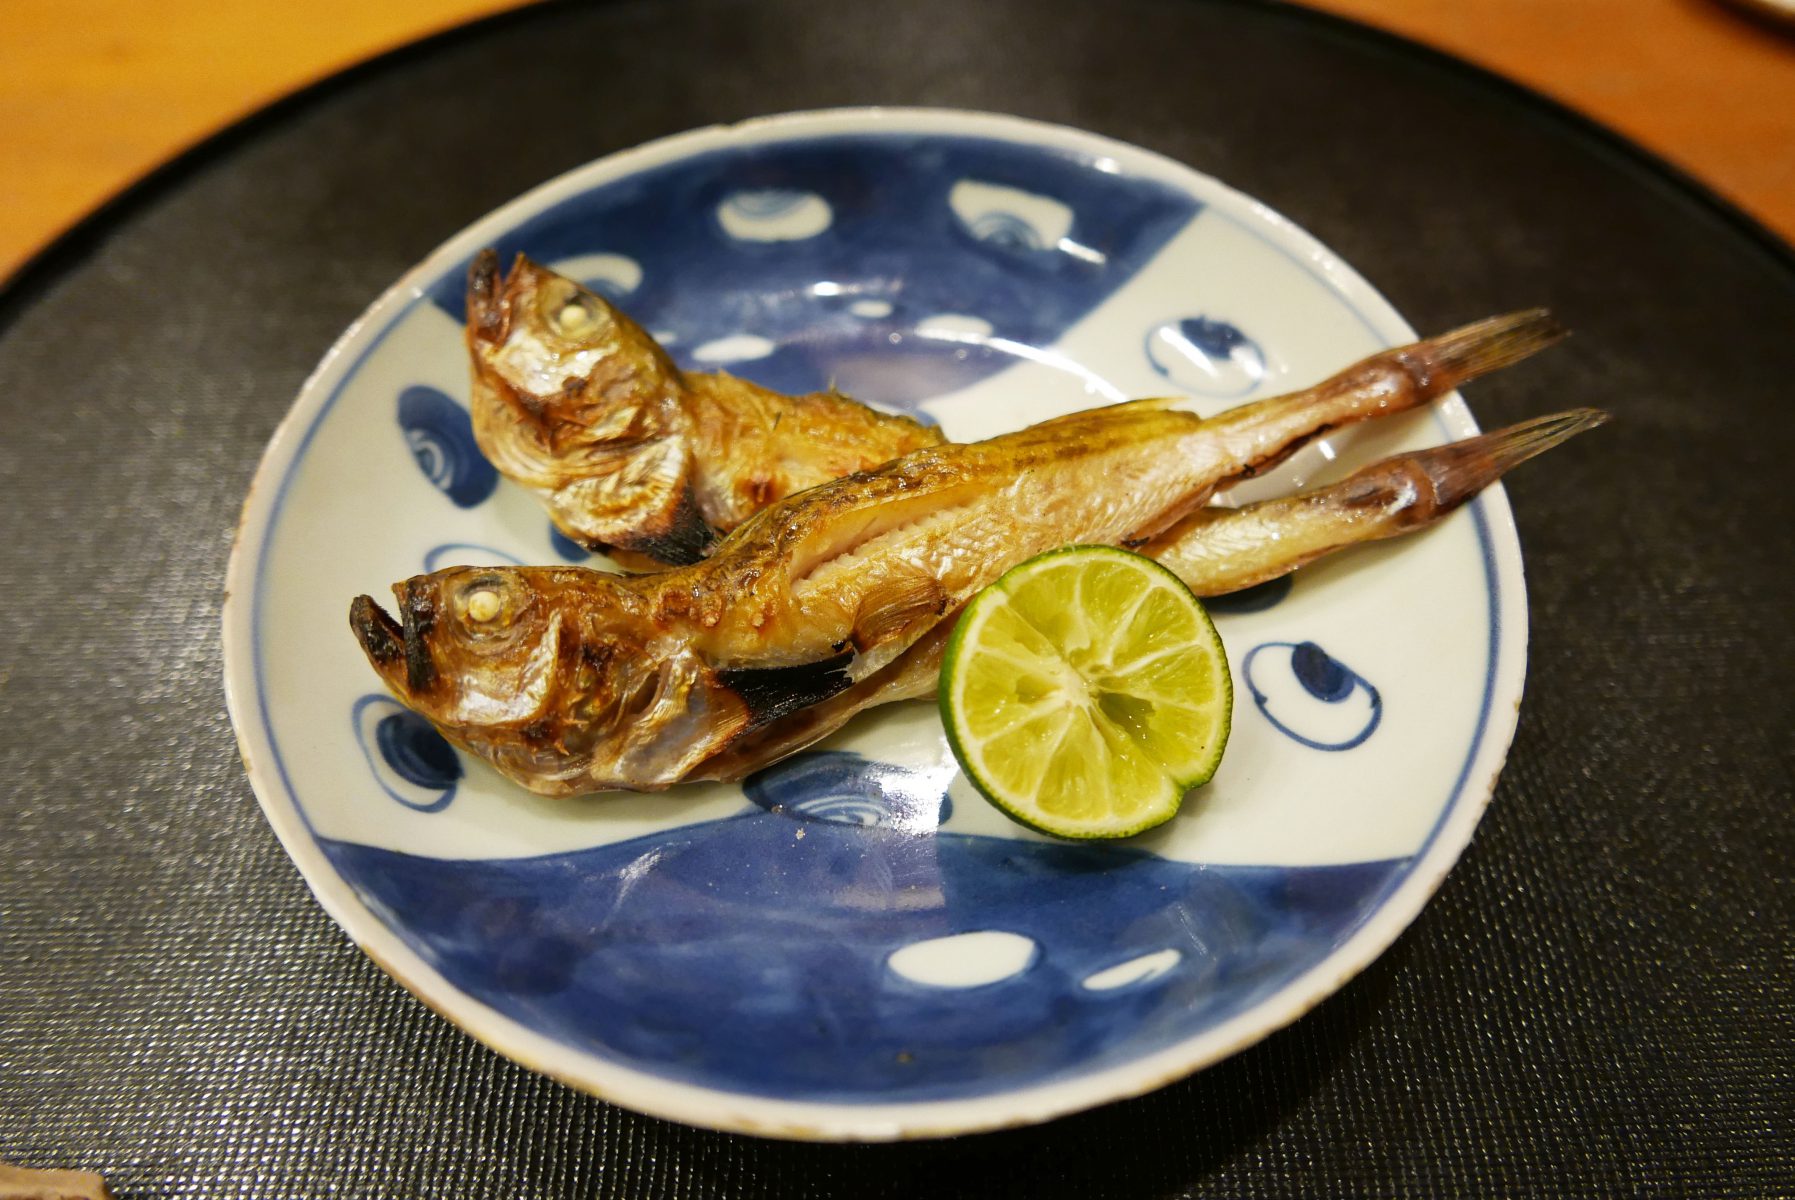 Hatahata fish